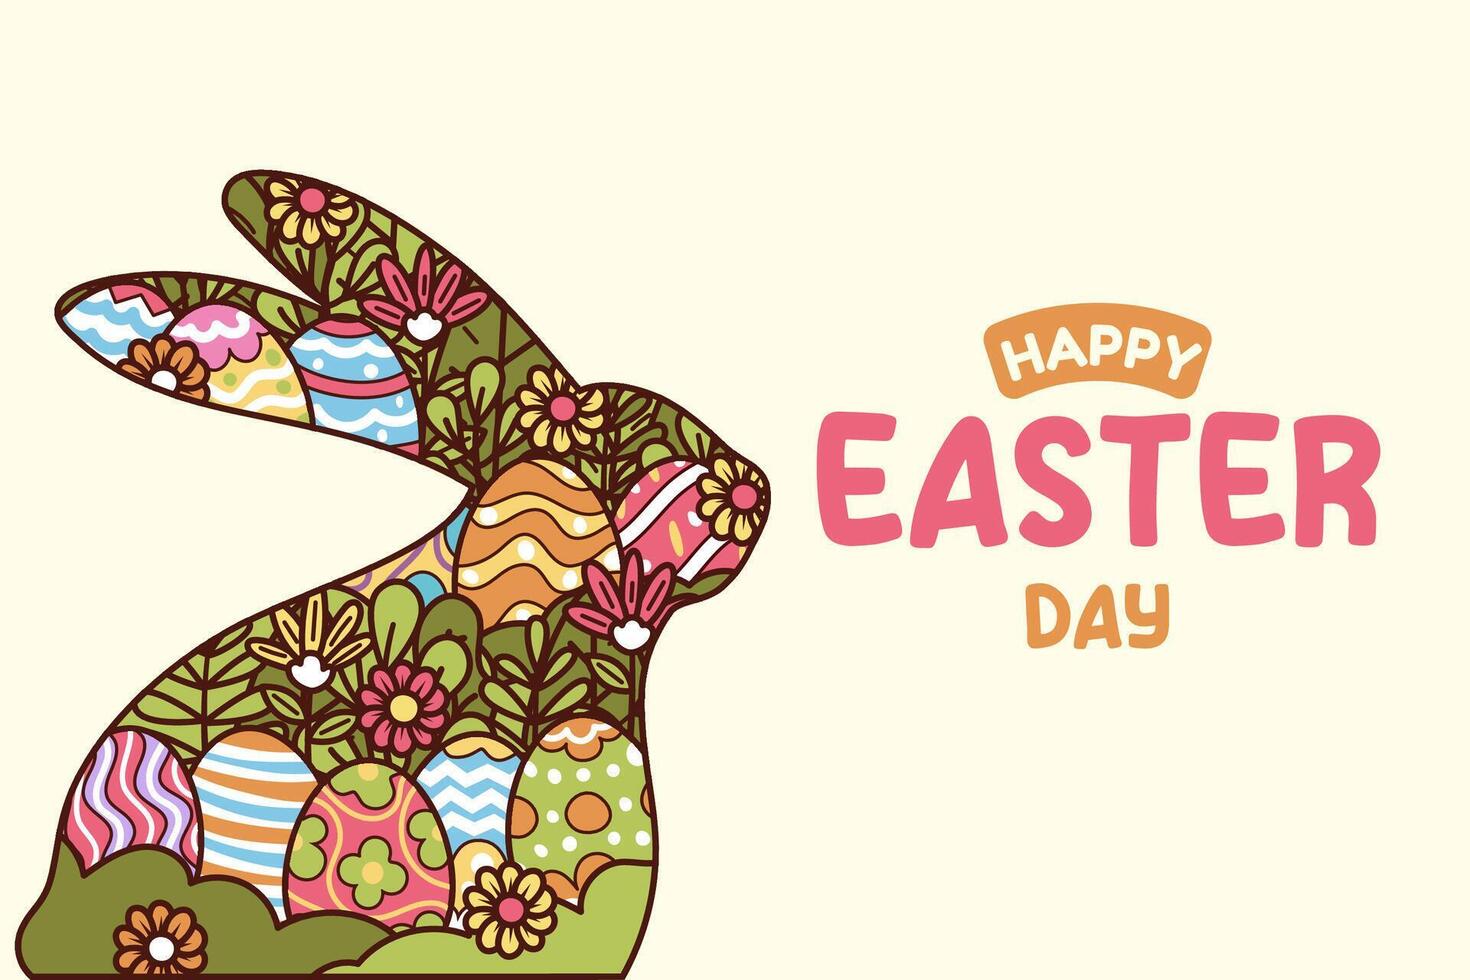 contento Pascua de Resurrección vector modelo con vistoso huevos, conejito, y flores